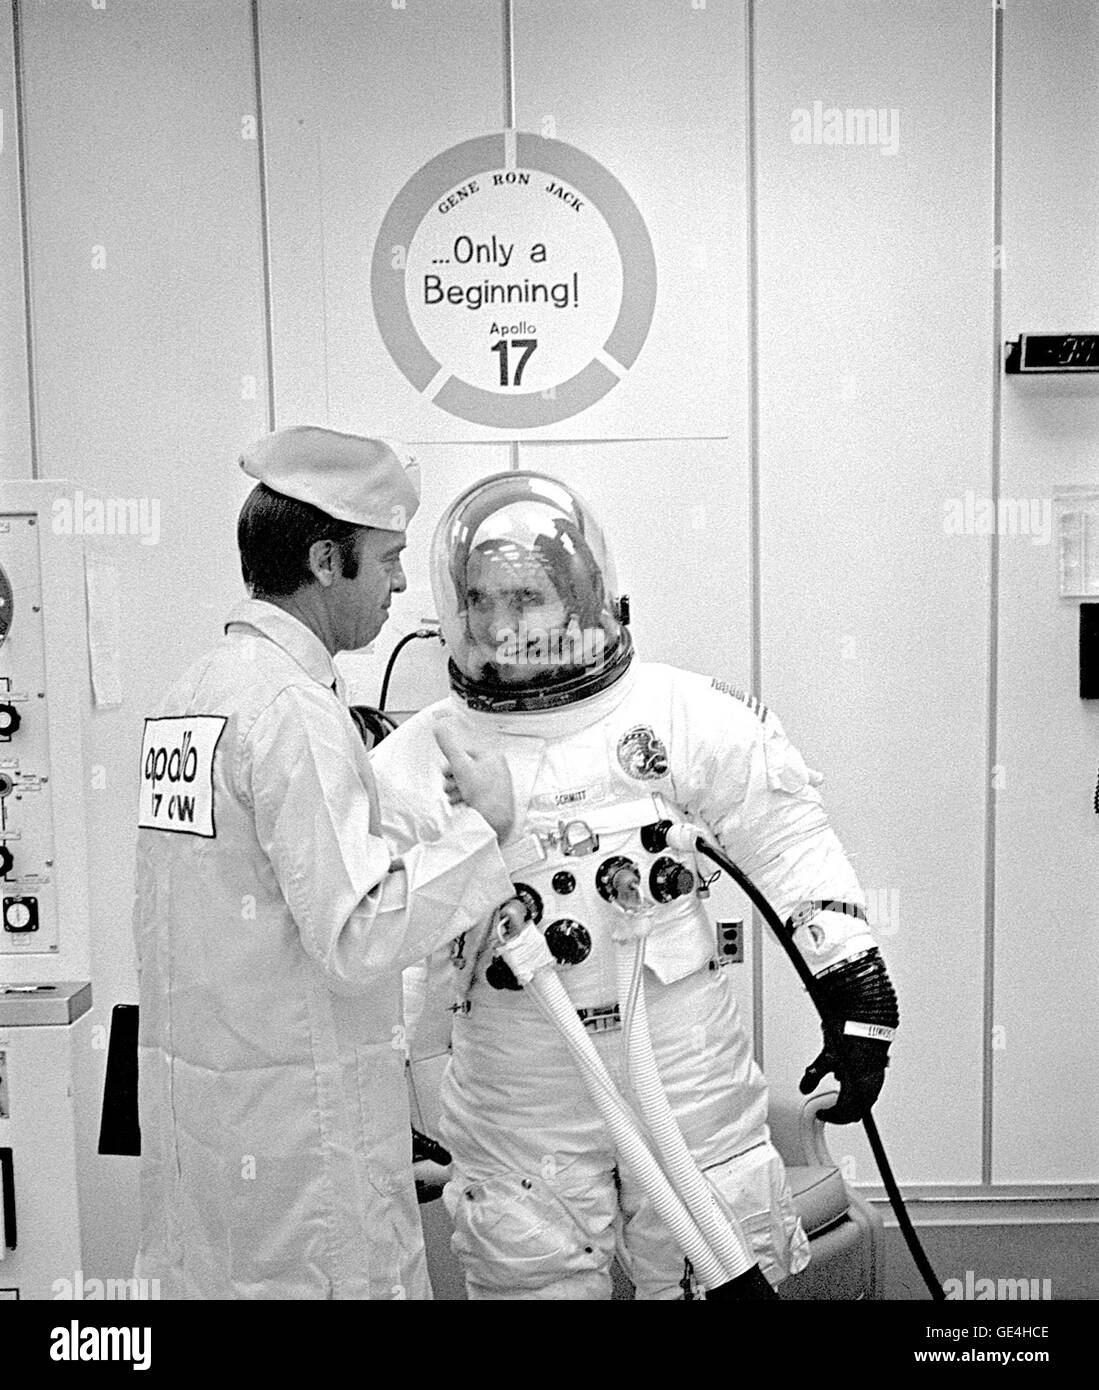 (6 Dezember 1972) Apollo 17 Lunar Module Pilot Harrison H. Schmitt teilt sich einen Moment der Entspannung mit Astronaut Alan Shepard während prelaunch passende Operationen. Schmitt wird der Mond-Taurus-Littrow-Region mit Mission Kommandant Eugene A. Cernan während der Mission der NASA sechste und letzte bemannte Mondlandung erkunden. Die dritte Crewman, Ronald E. Evans, wird das Kommandomodul allein in der Mondumlaufbahn während seiner Kameraden Oberfläche Exploration pilot.  Bild-Nr.: 72P-0547 Stockfoto